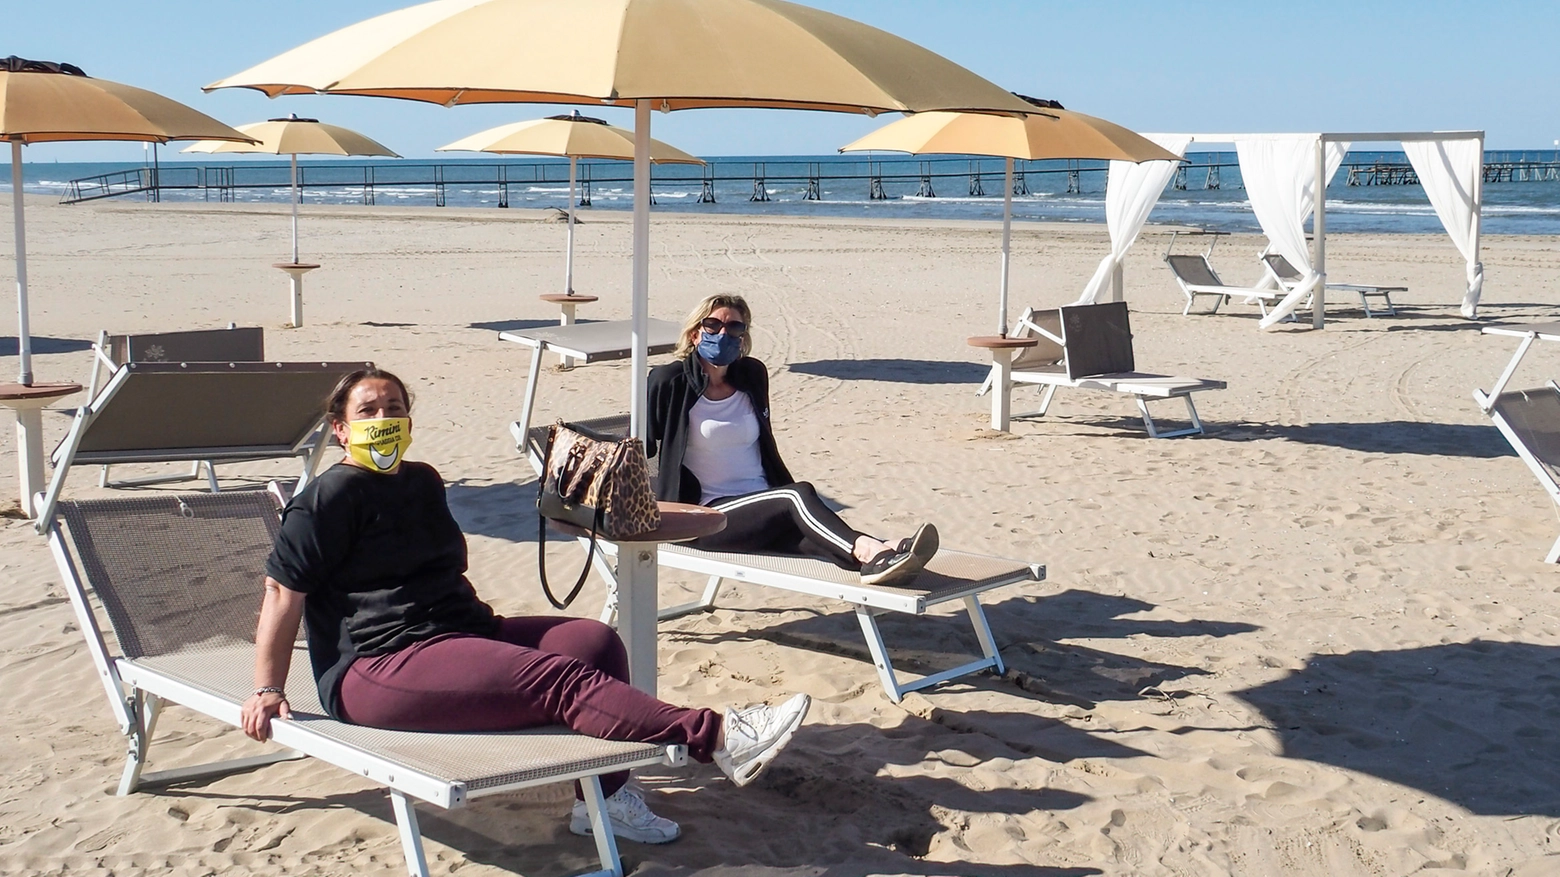 Come potrebbe essere la nuova disposizione degli ombrelloni in spiaggia (foto Petrangeli)